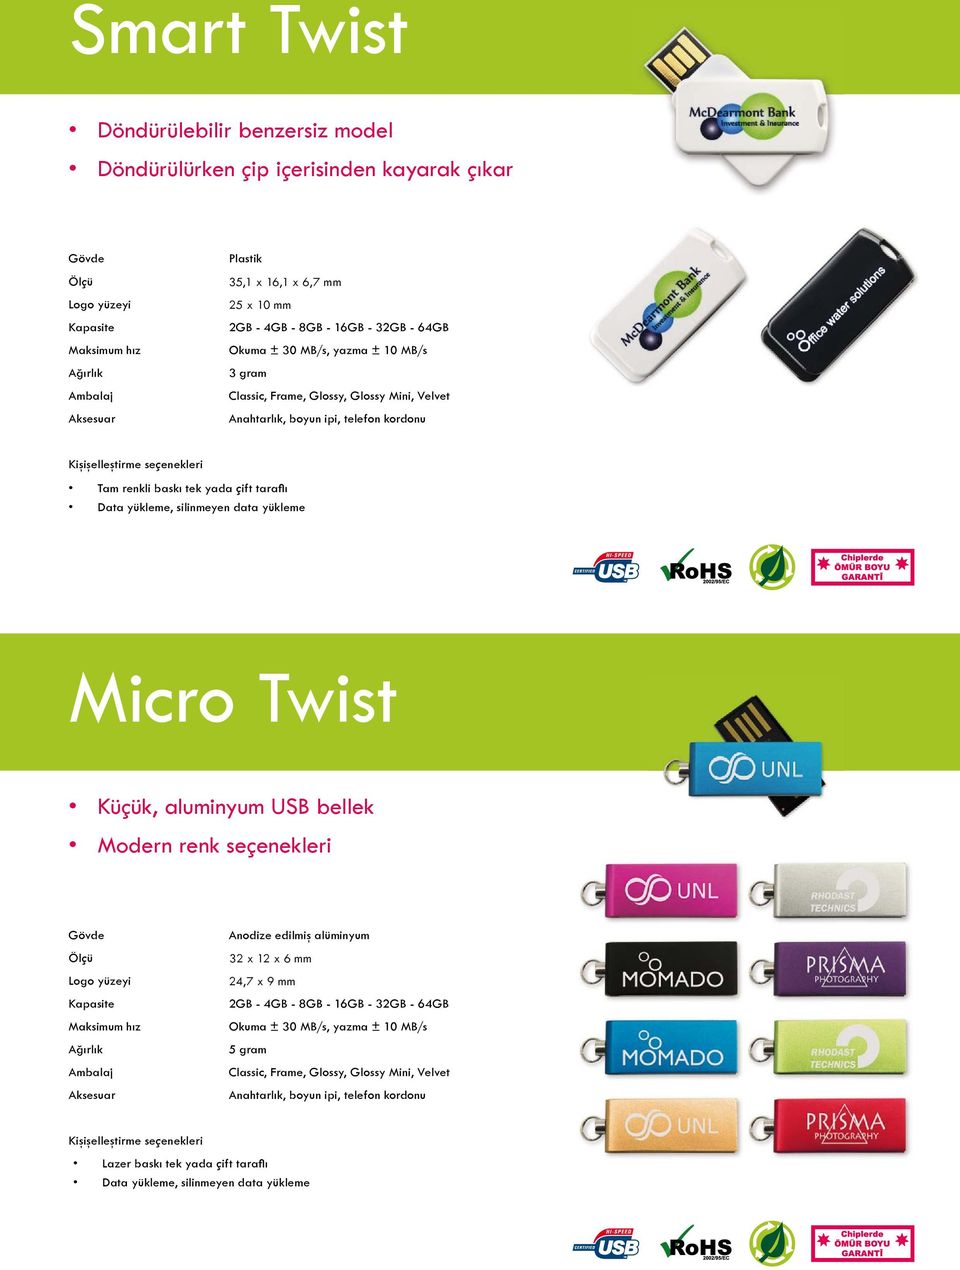 Data yükleme, silinmeyen data yükleme Micro Twist Küçük, aluminyum USB bellek Modern renk seçenekleri Logo yüzeyi Maksimum hız Ambalaj Aksesuar Anodize edilmiş alüminyum 32 x 12 x 6 mm 24,7 x 9 mm